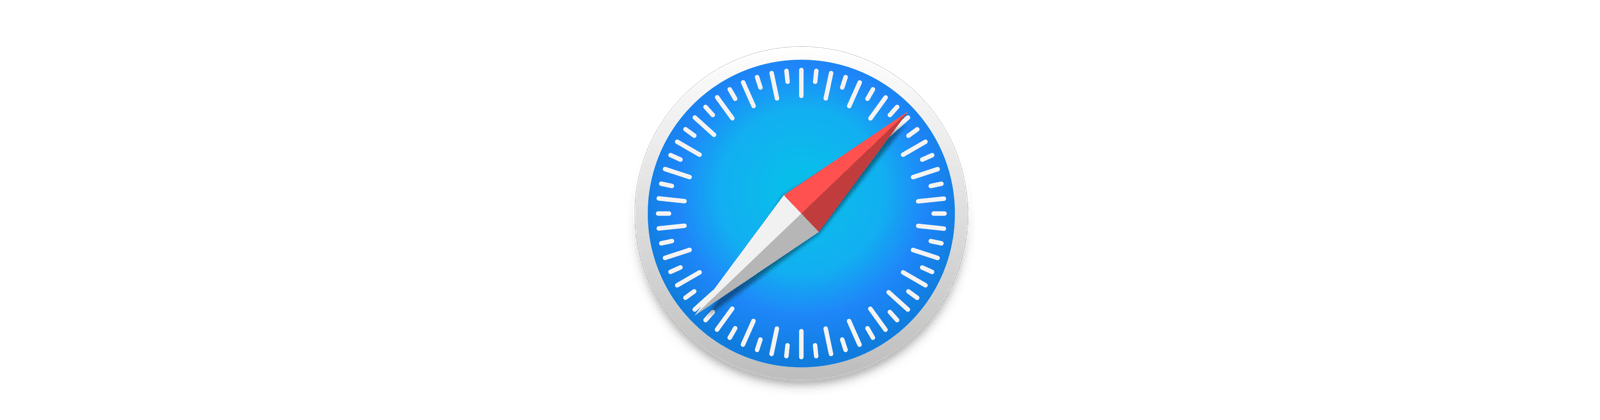 Apple Safari Security And Privacy Guide 2020   Defending Digital - Safari, Transparent background PNG HD thumbnail